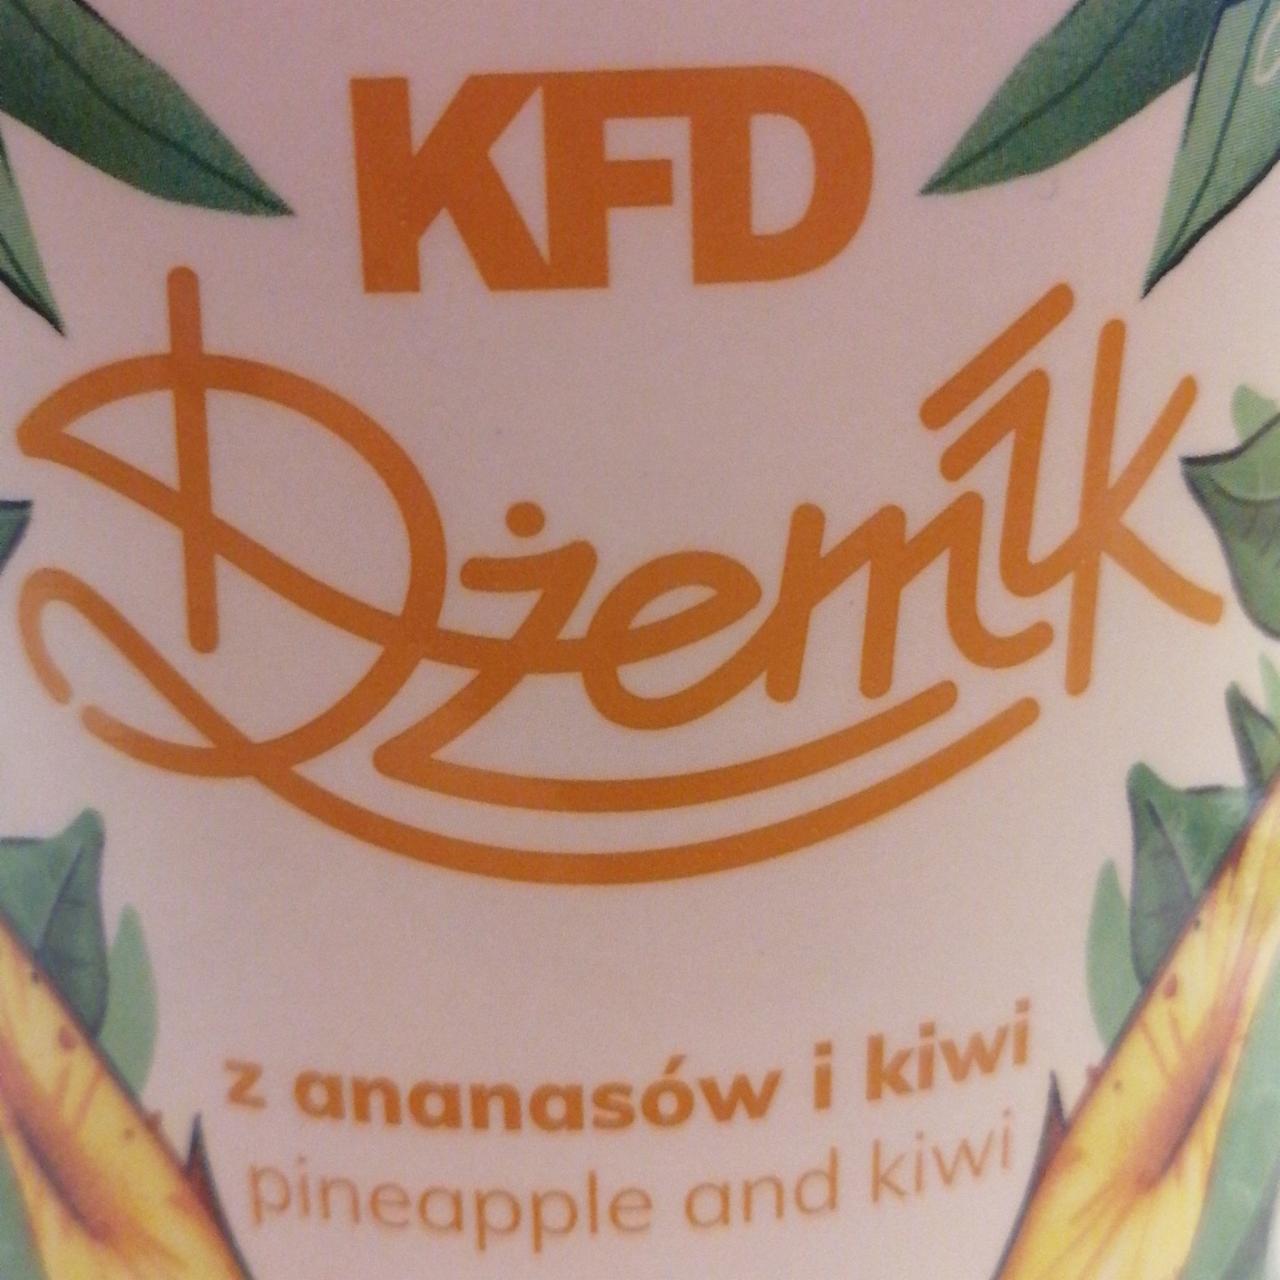 Fotografie - Dżemik z ananasów i kiwi KFD